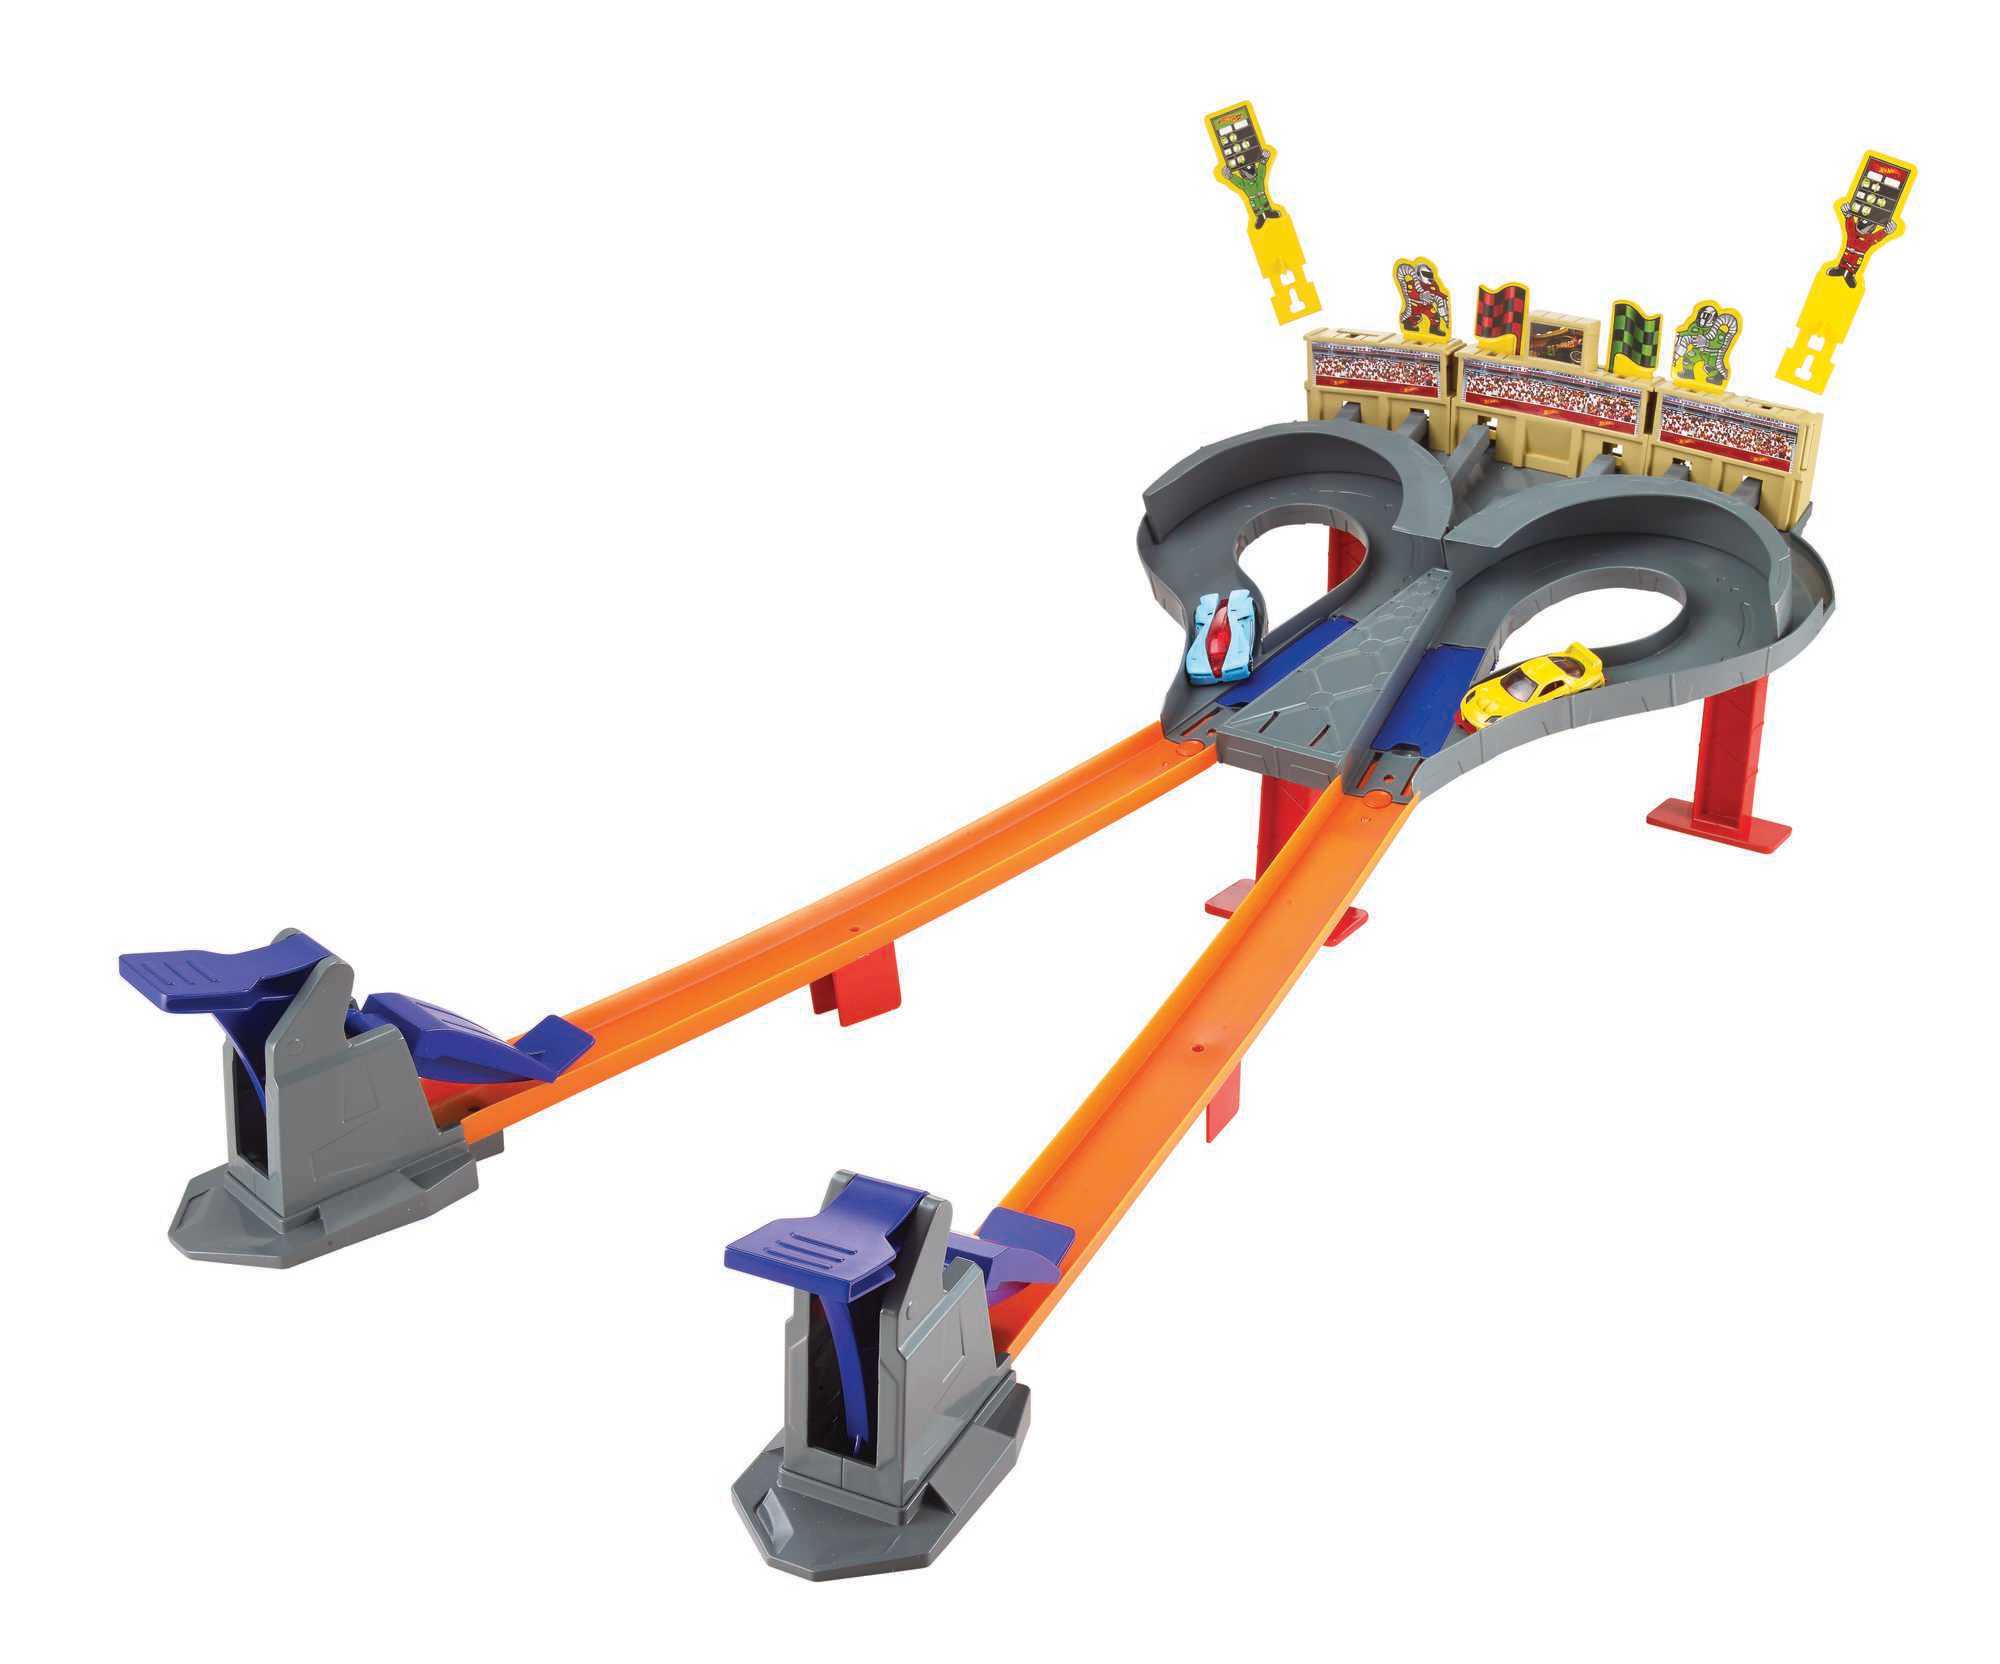 Hot Wheels Super Speed Blastway Track Set | Mattel